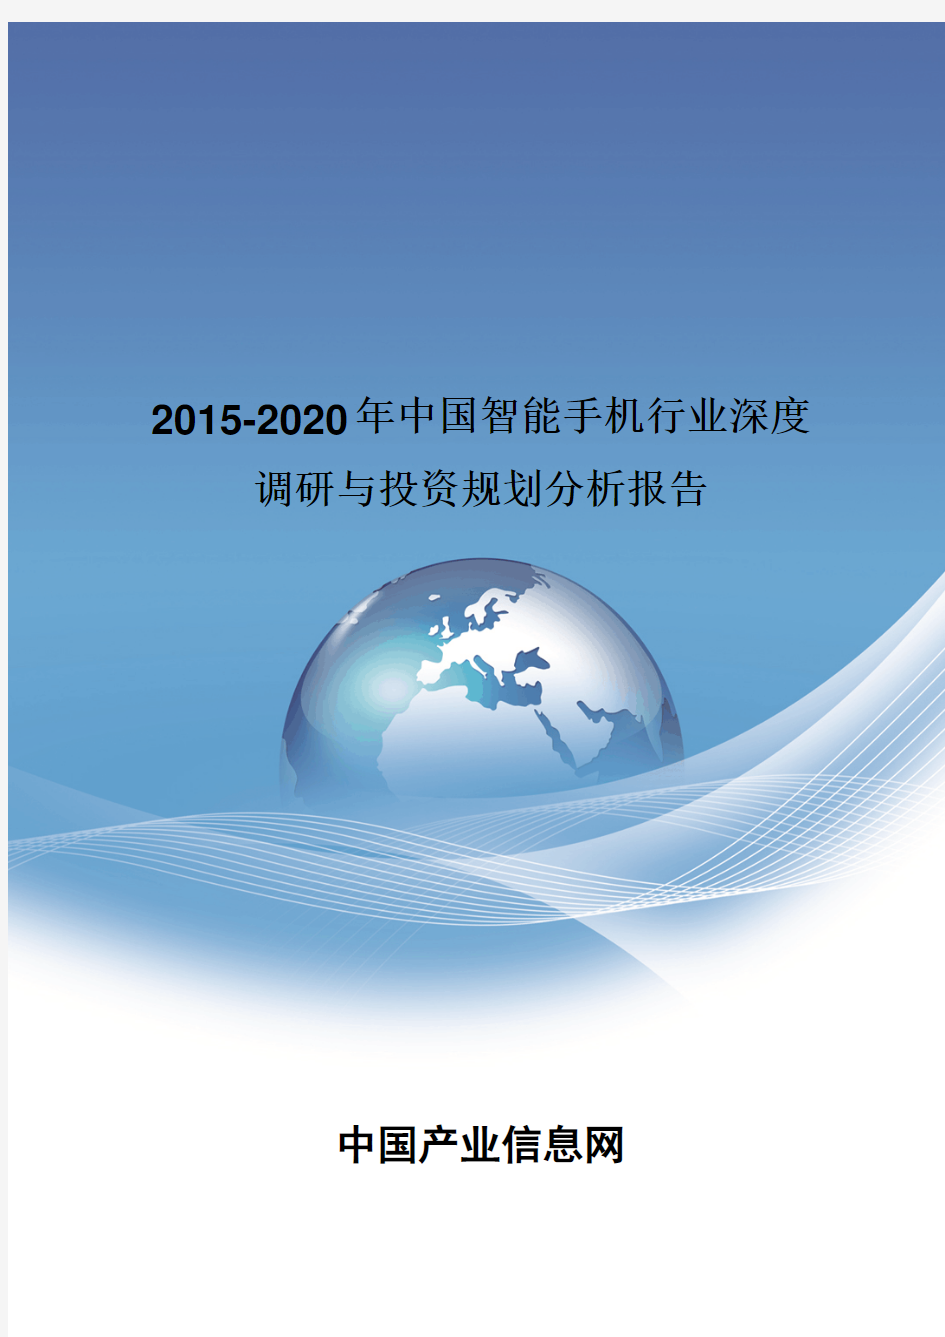 2015-2020年中国智能手机行业深度调研报告